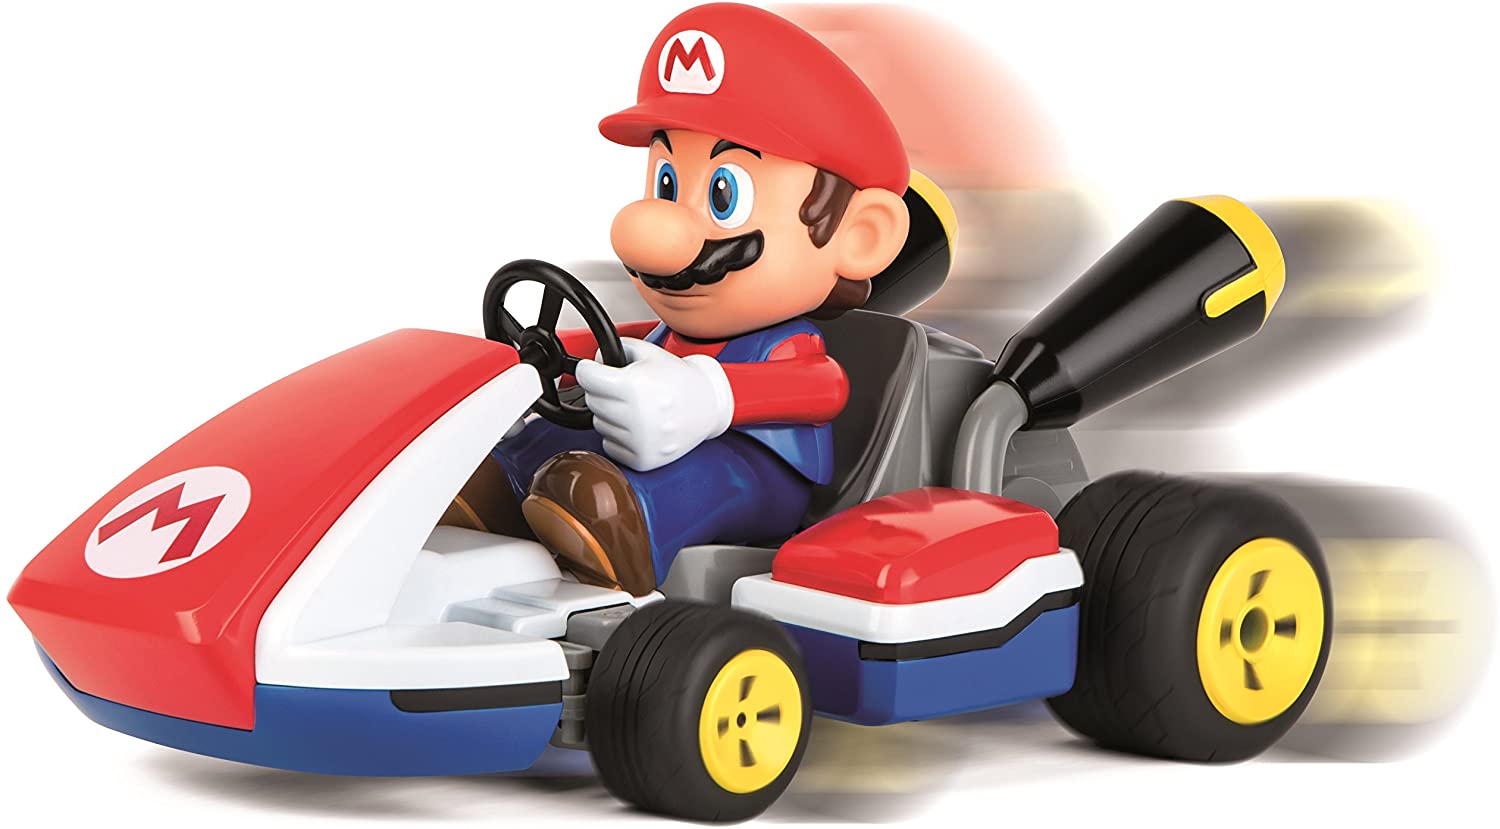 Carrera RC Mario Kart Mario Kart afstand bestuurbare 1/16 auto 2.4Ghz met geluid